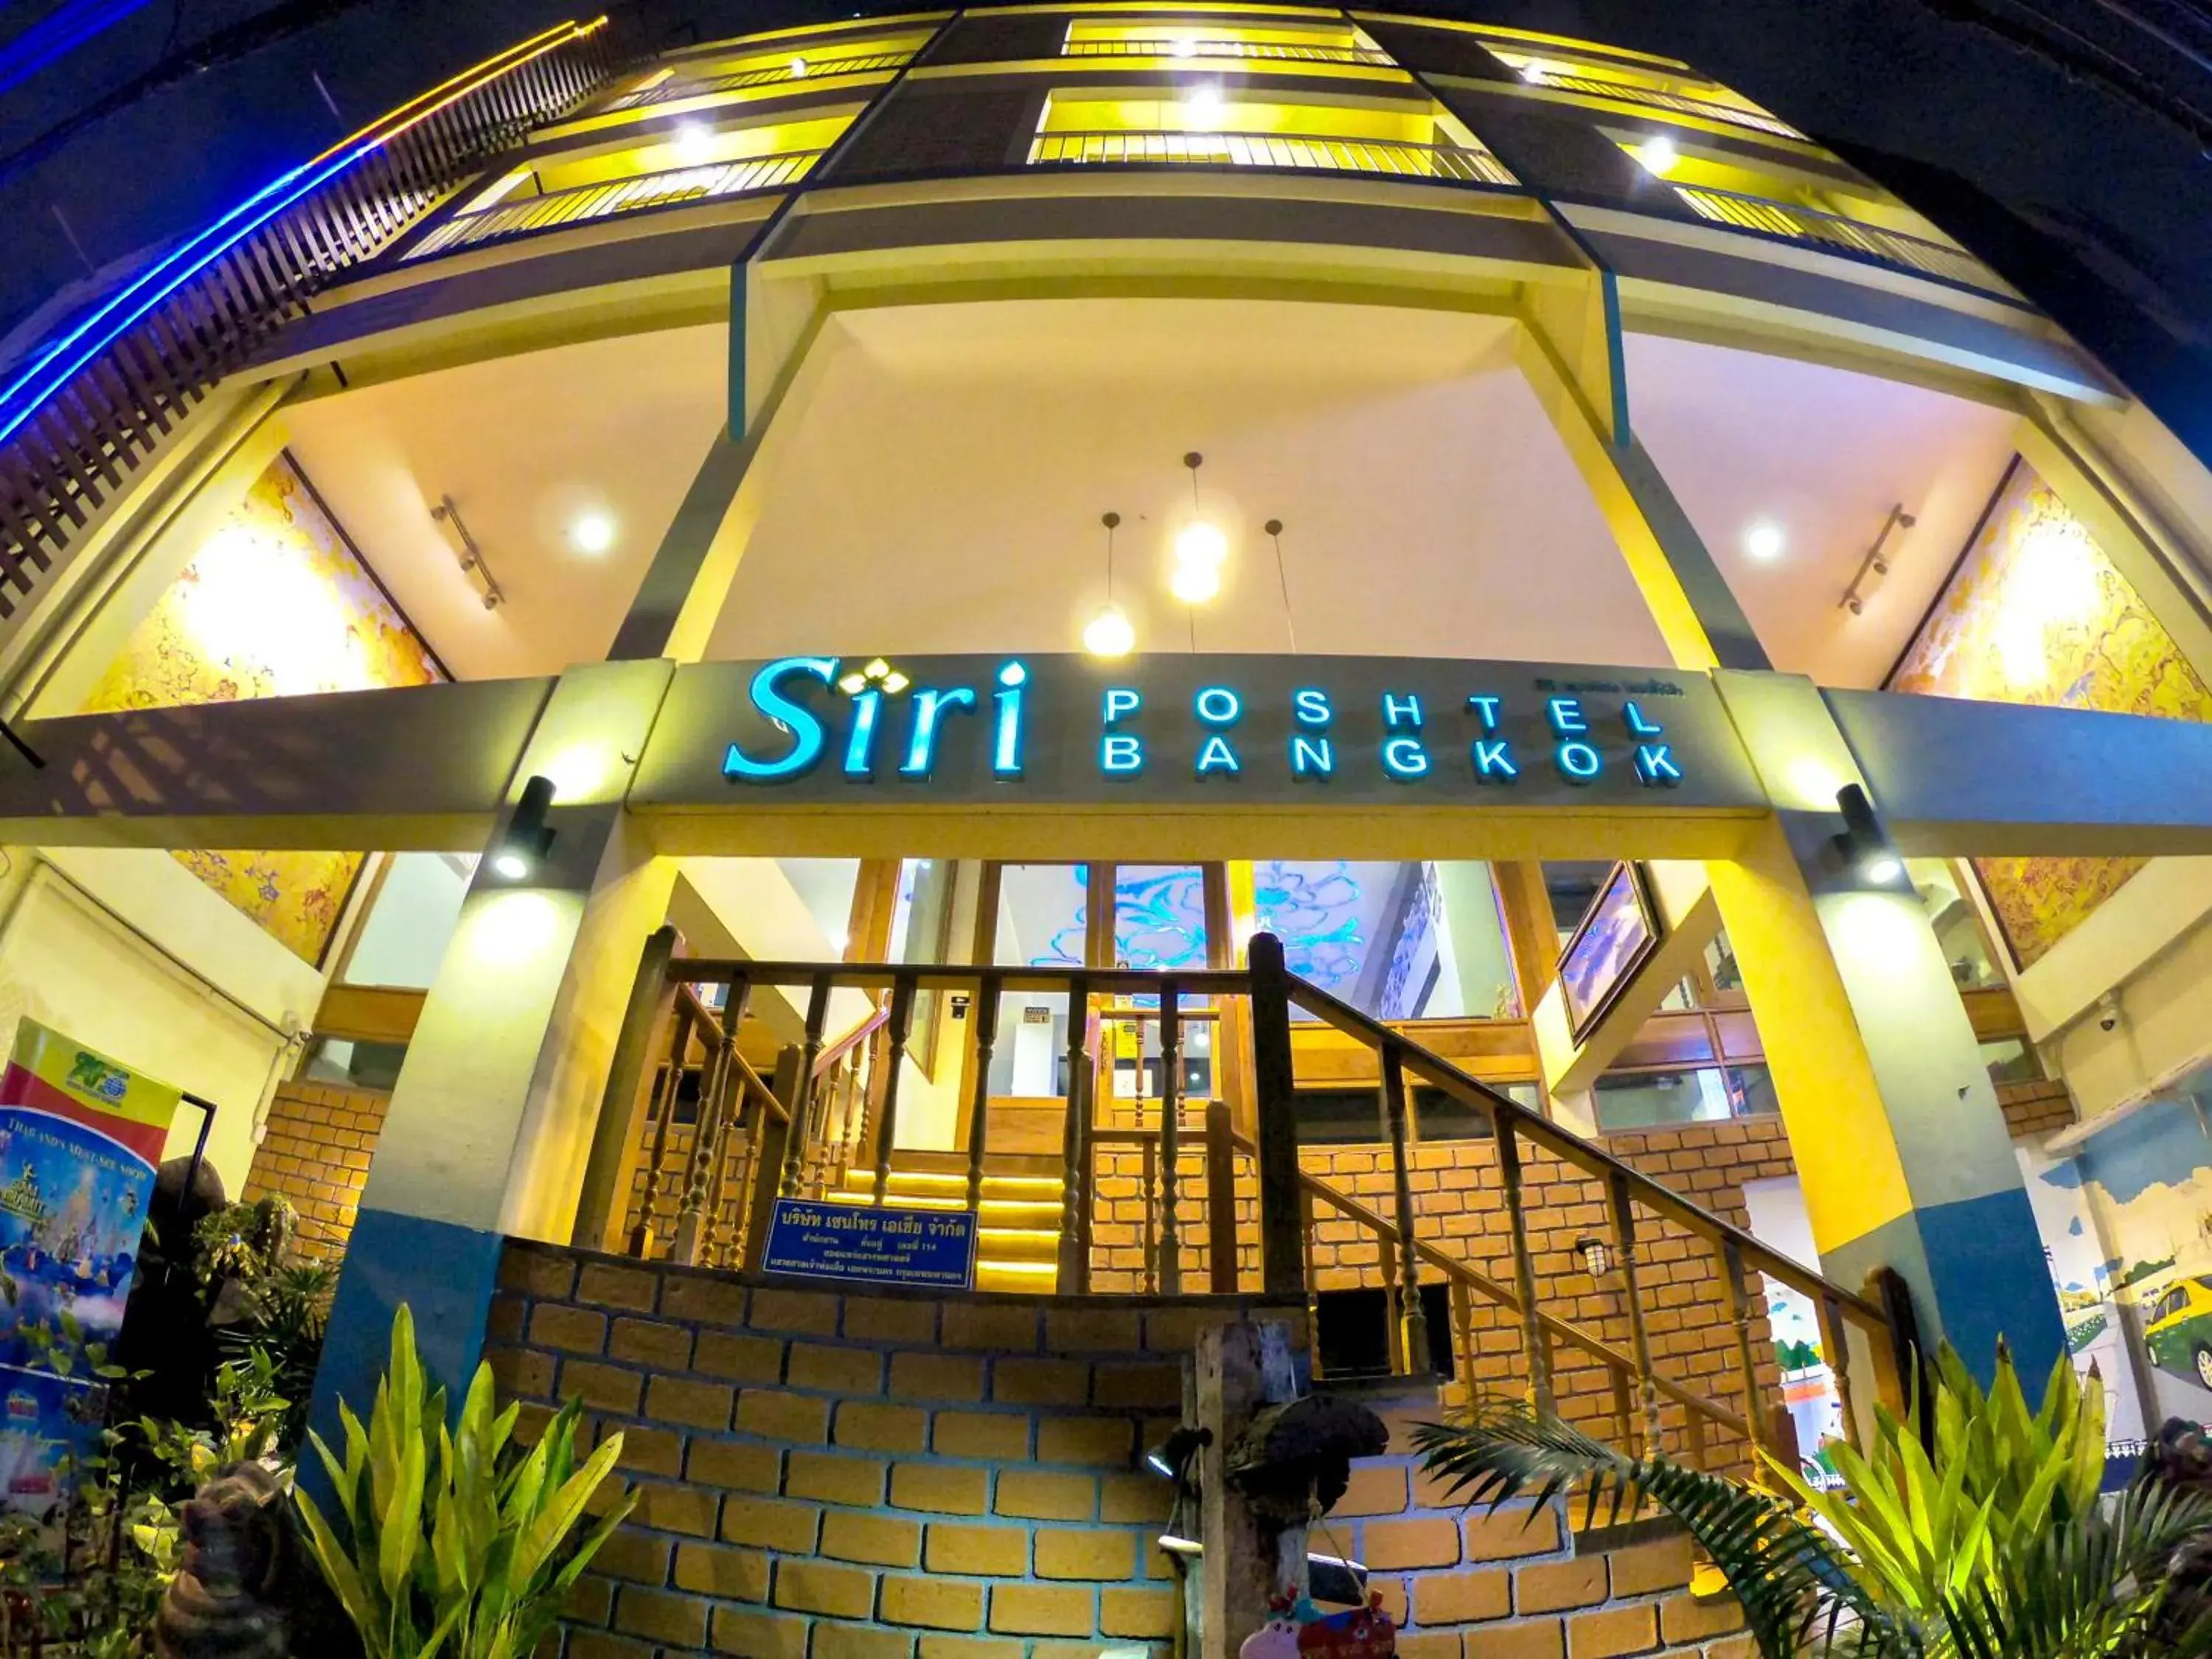 Property building in Siri Poshtel Bangkok (SHA Extra Plus)